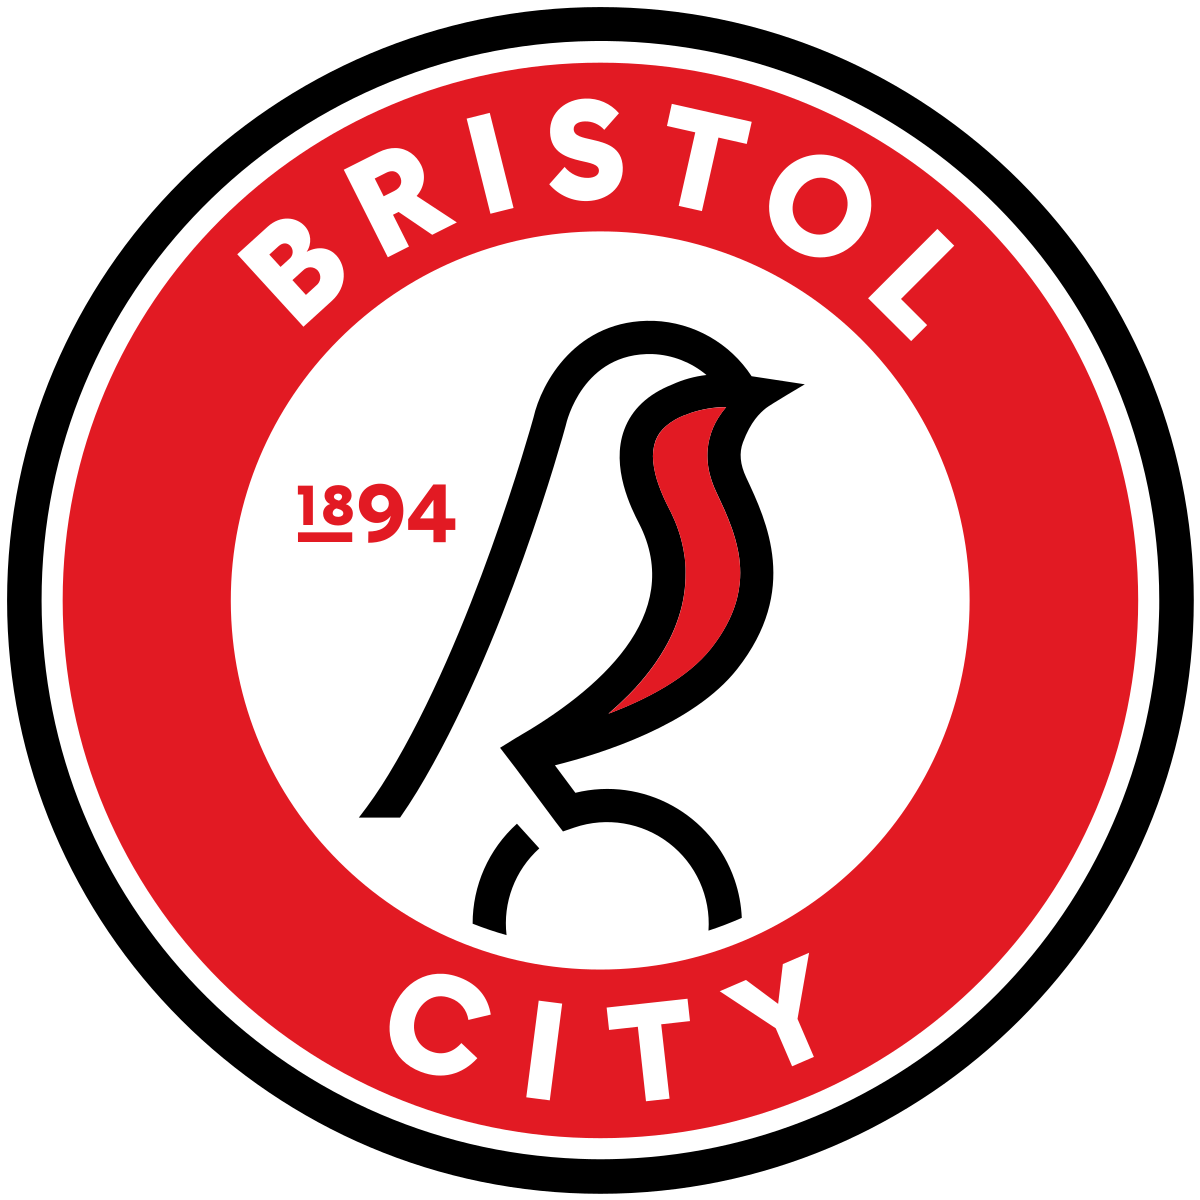 Bristol City v Rotherham United - Hospitality